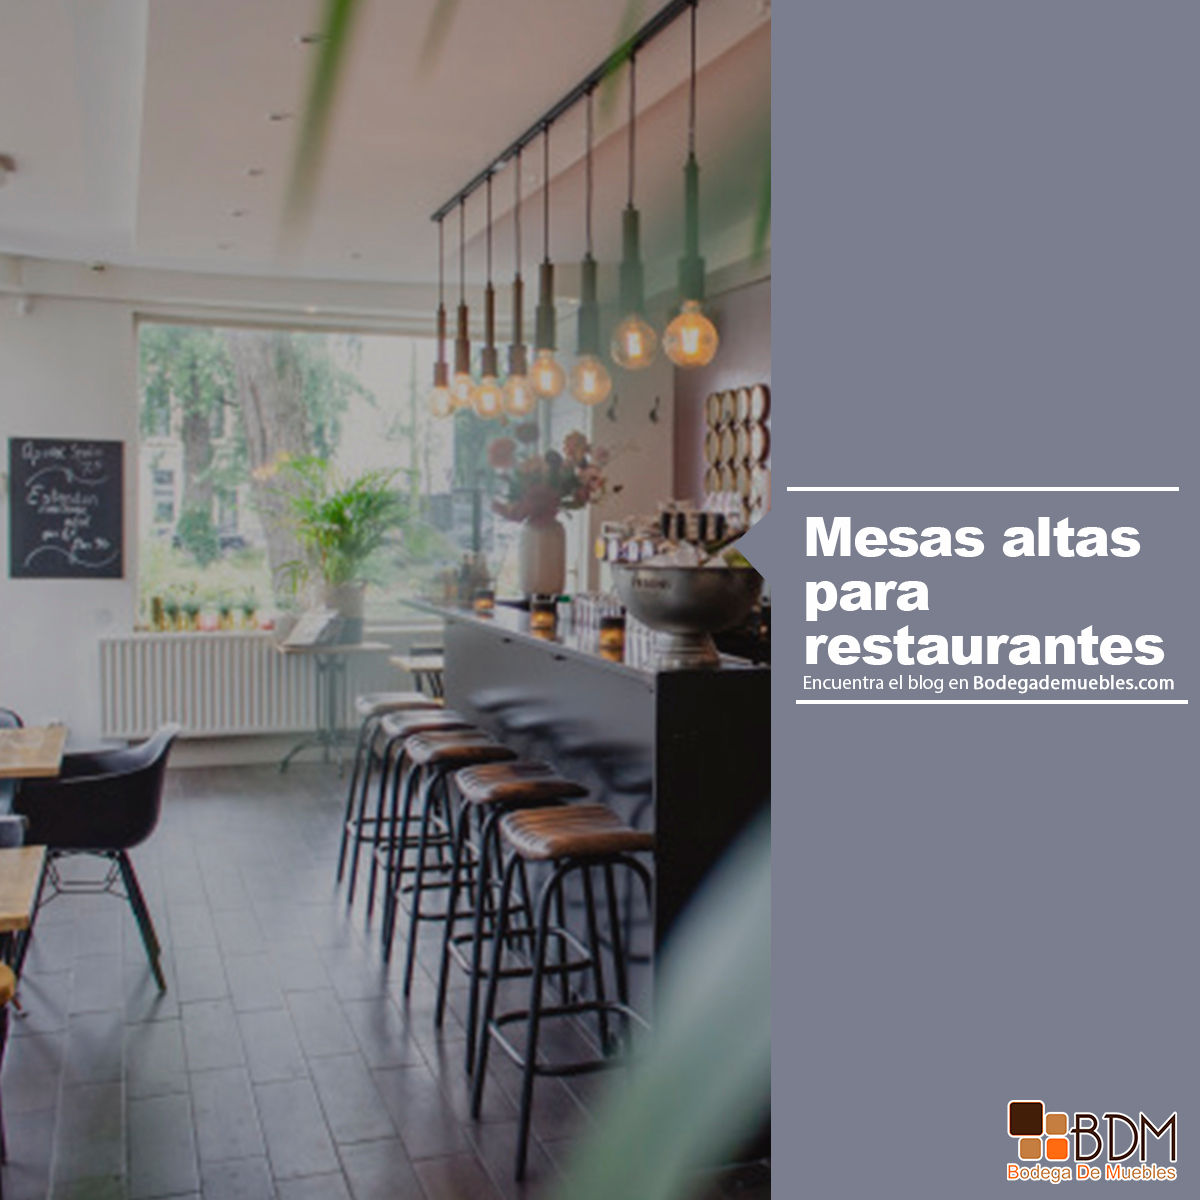 Las mesas altas han tomado los restaurantes de todo el mundo gracias a los múltiples beneficios que tienen para los establecimientos.